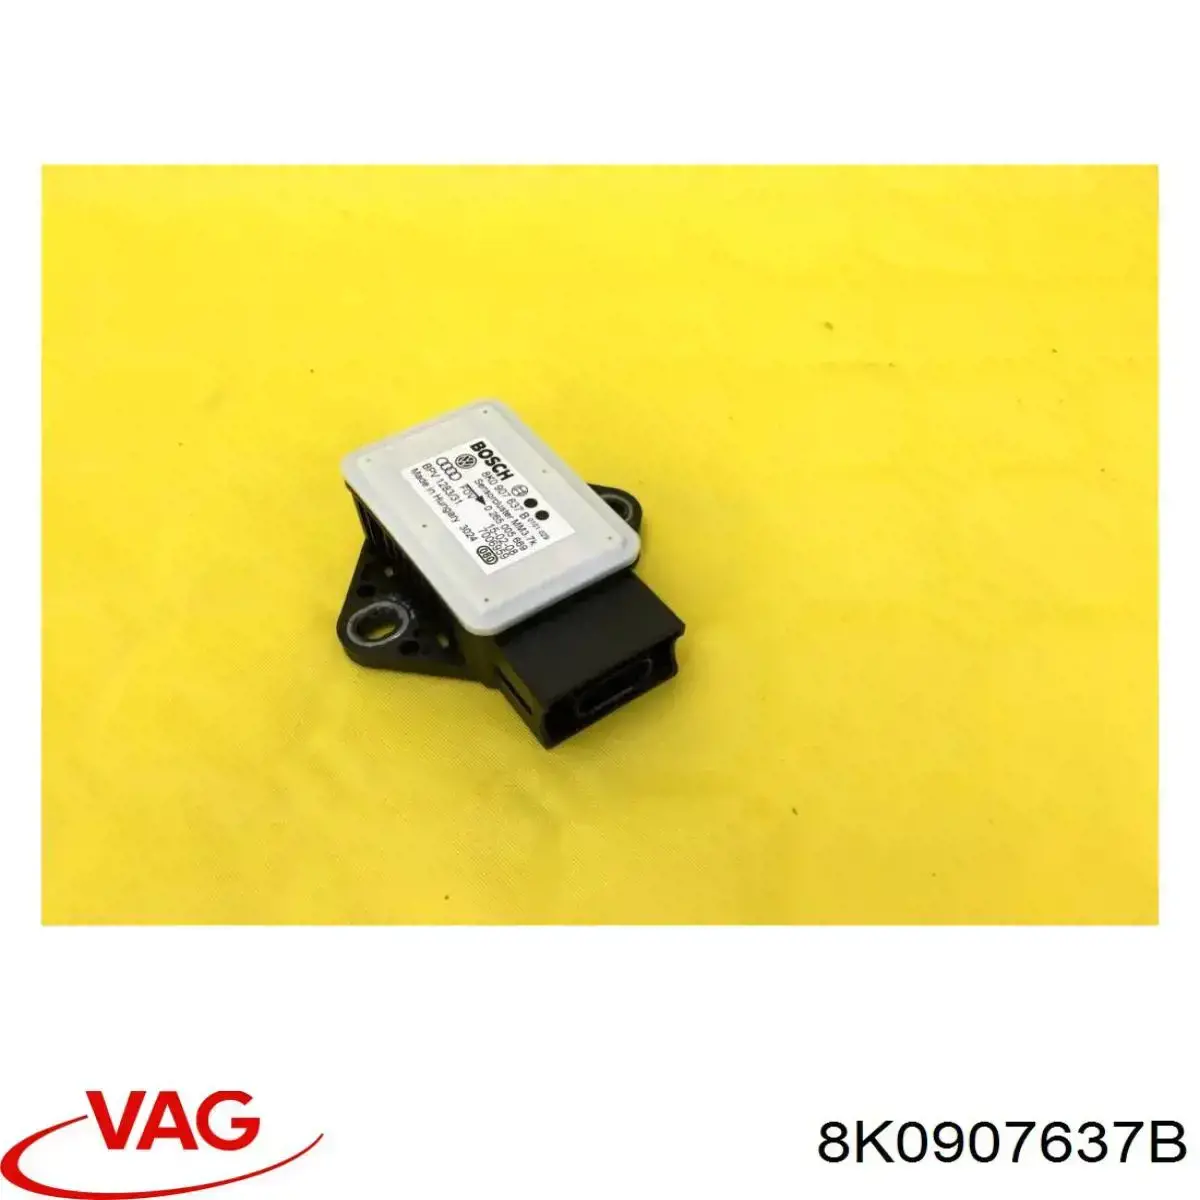 0265005739 Bosch sensor de aceleração transversal (esp)